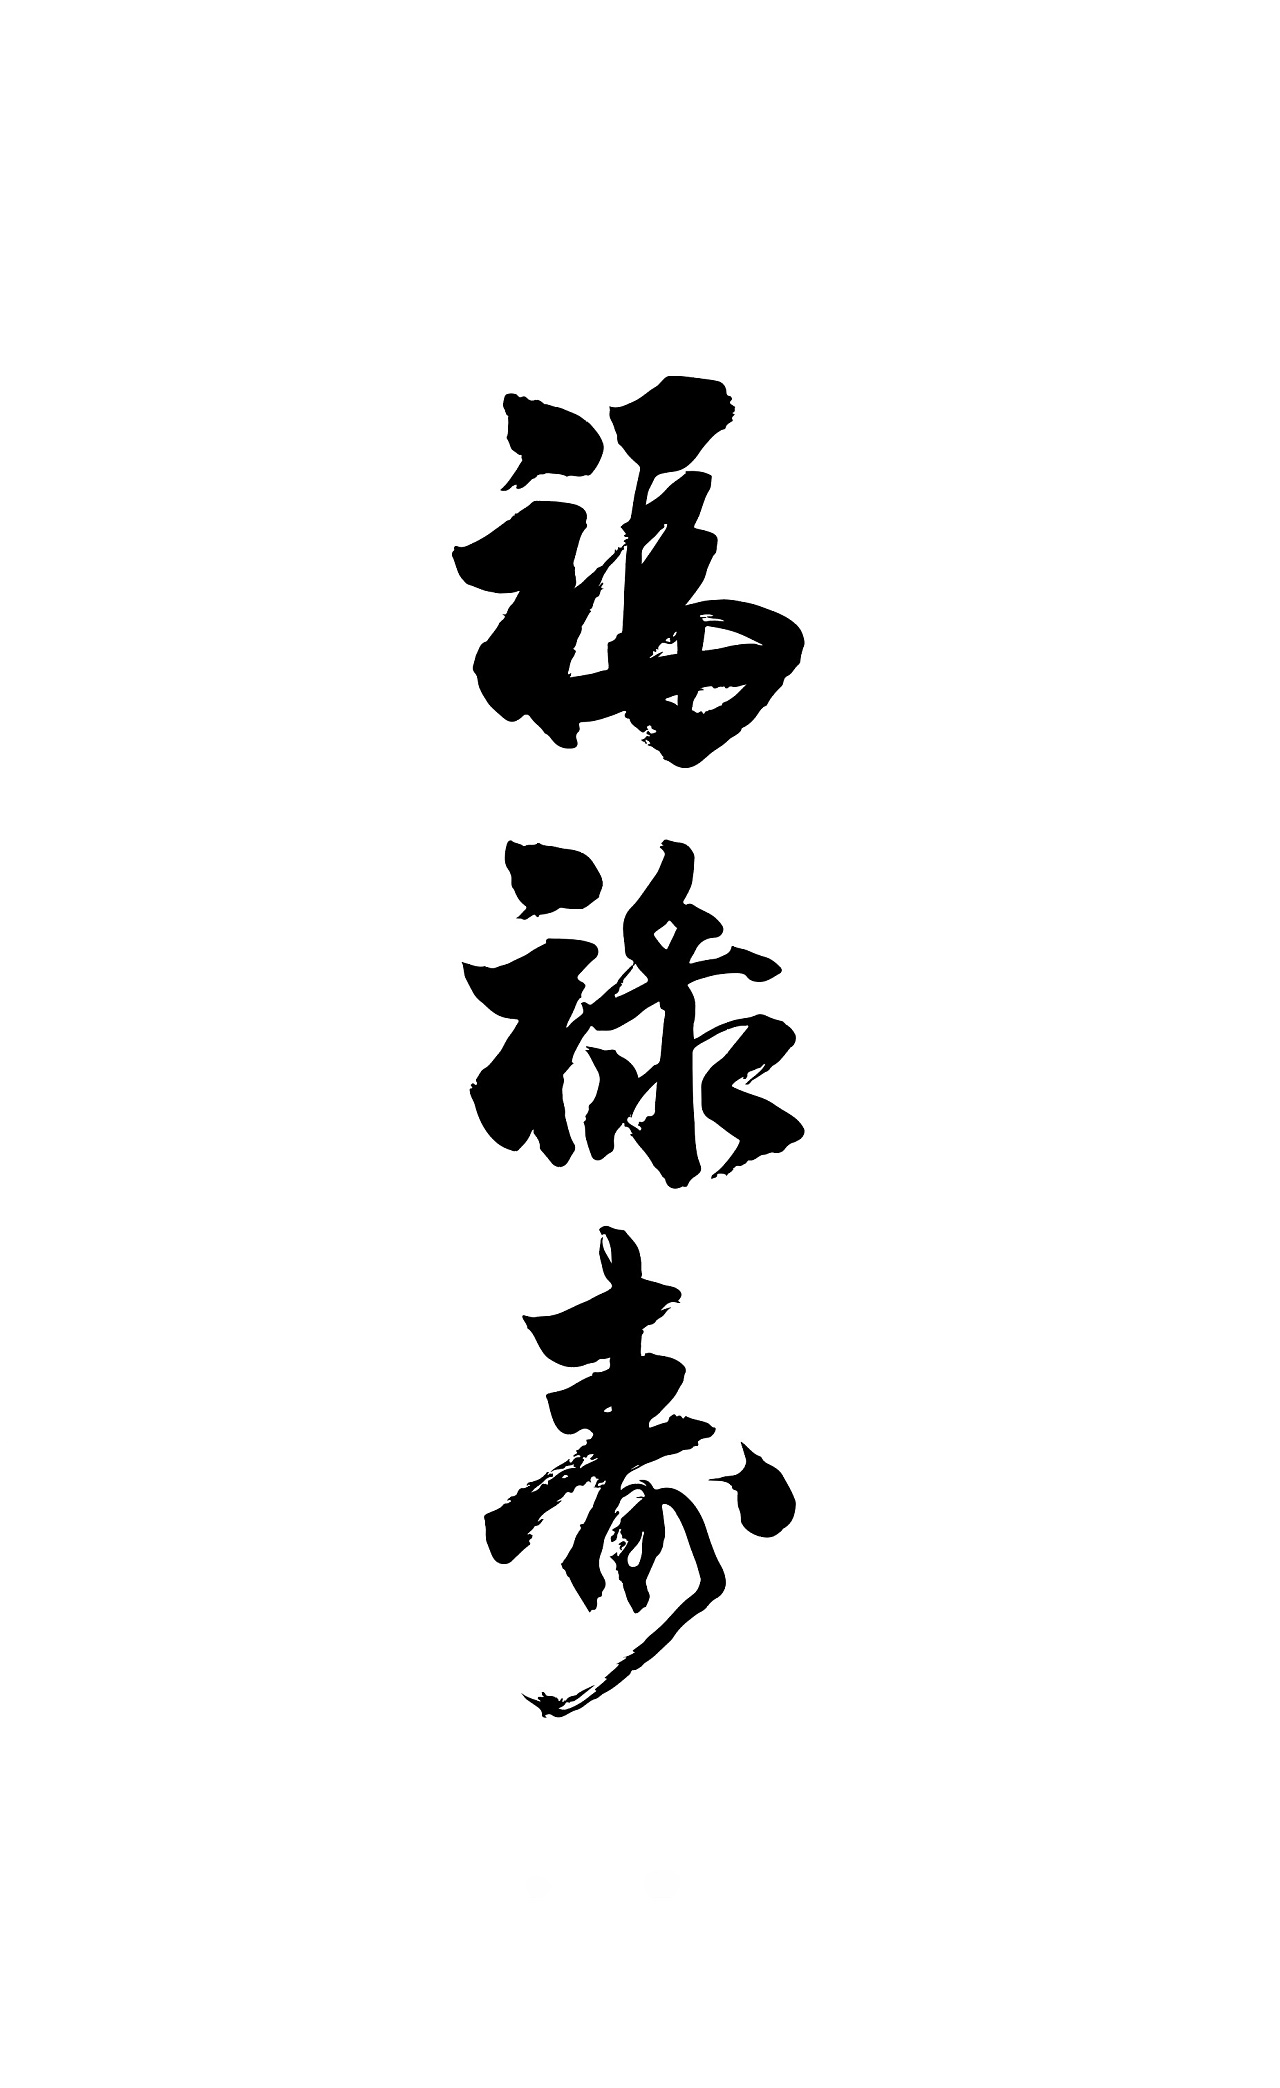 福禄寿喜字体创意设计图片